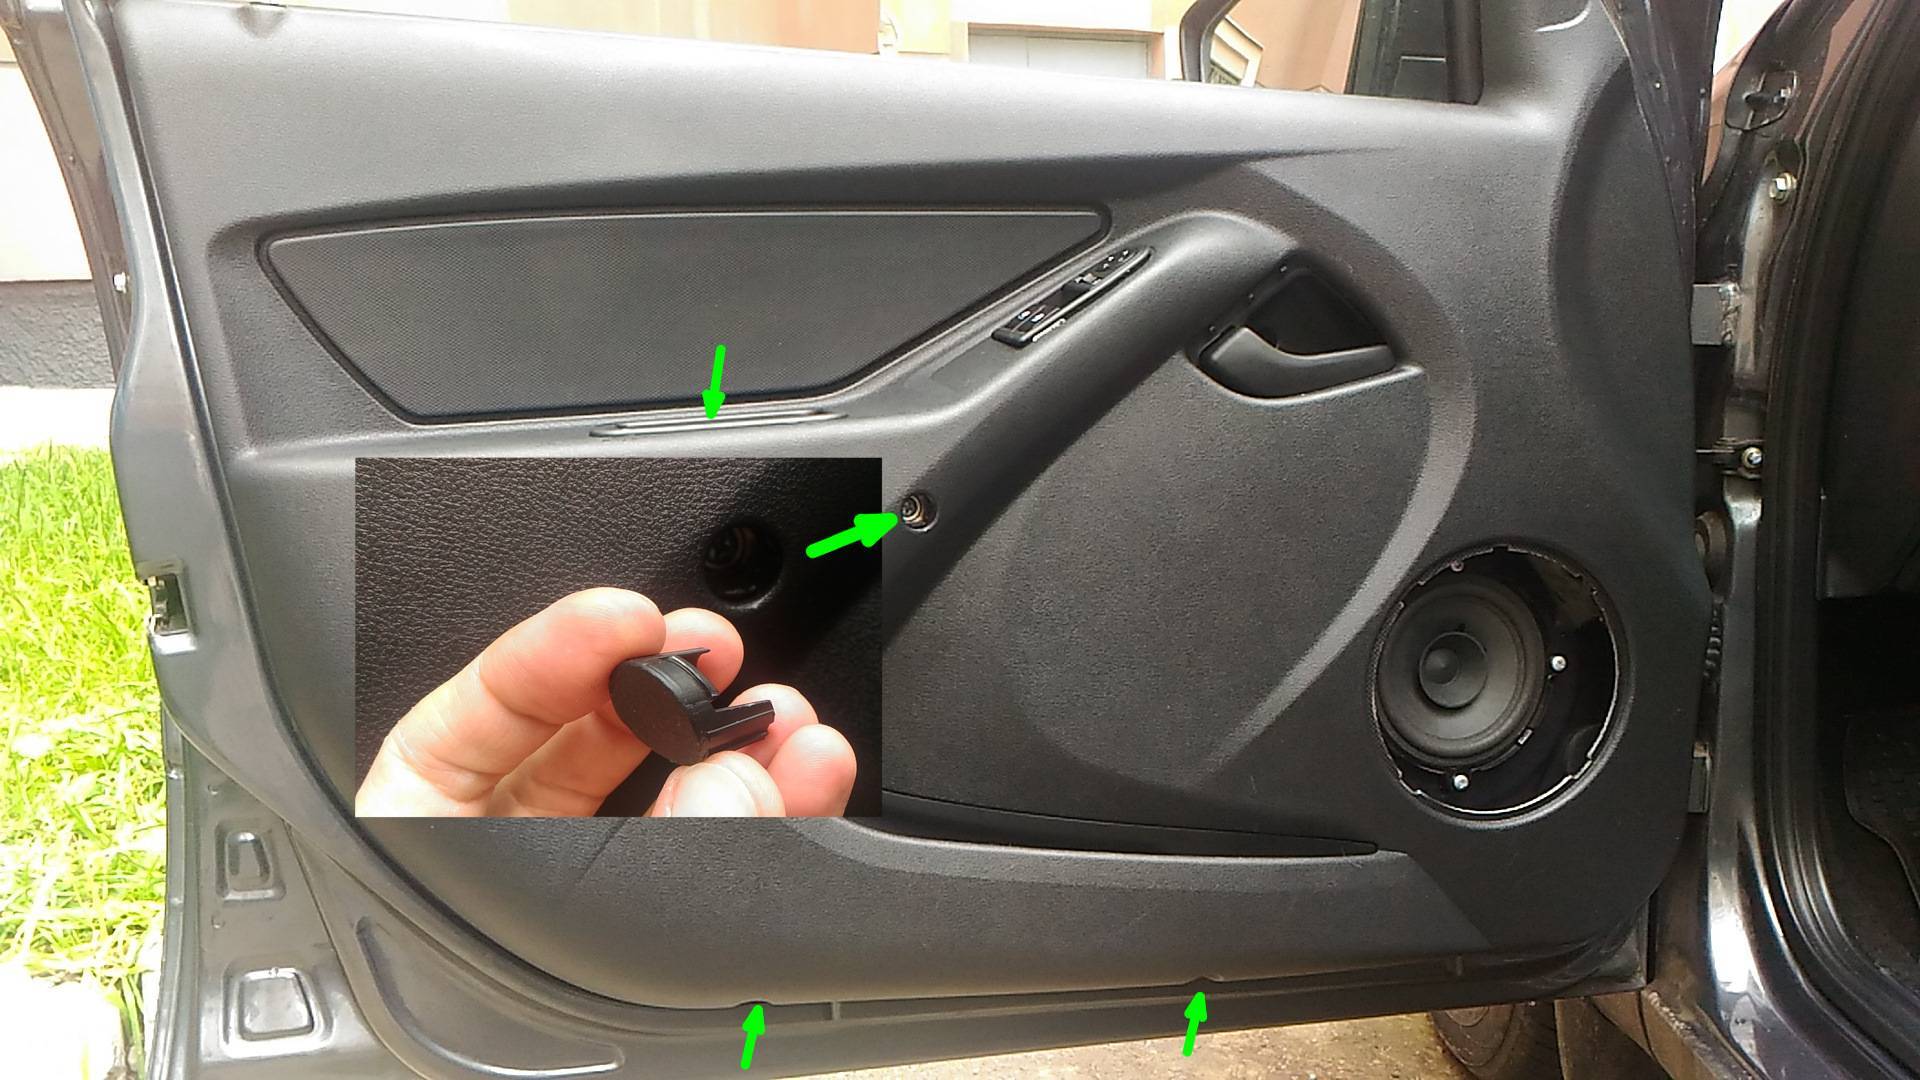 Как снять обшивку двери на лада гранта: переднюю, заднюю — пошаговая инструкция с фото и видео